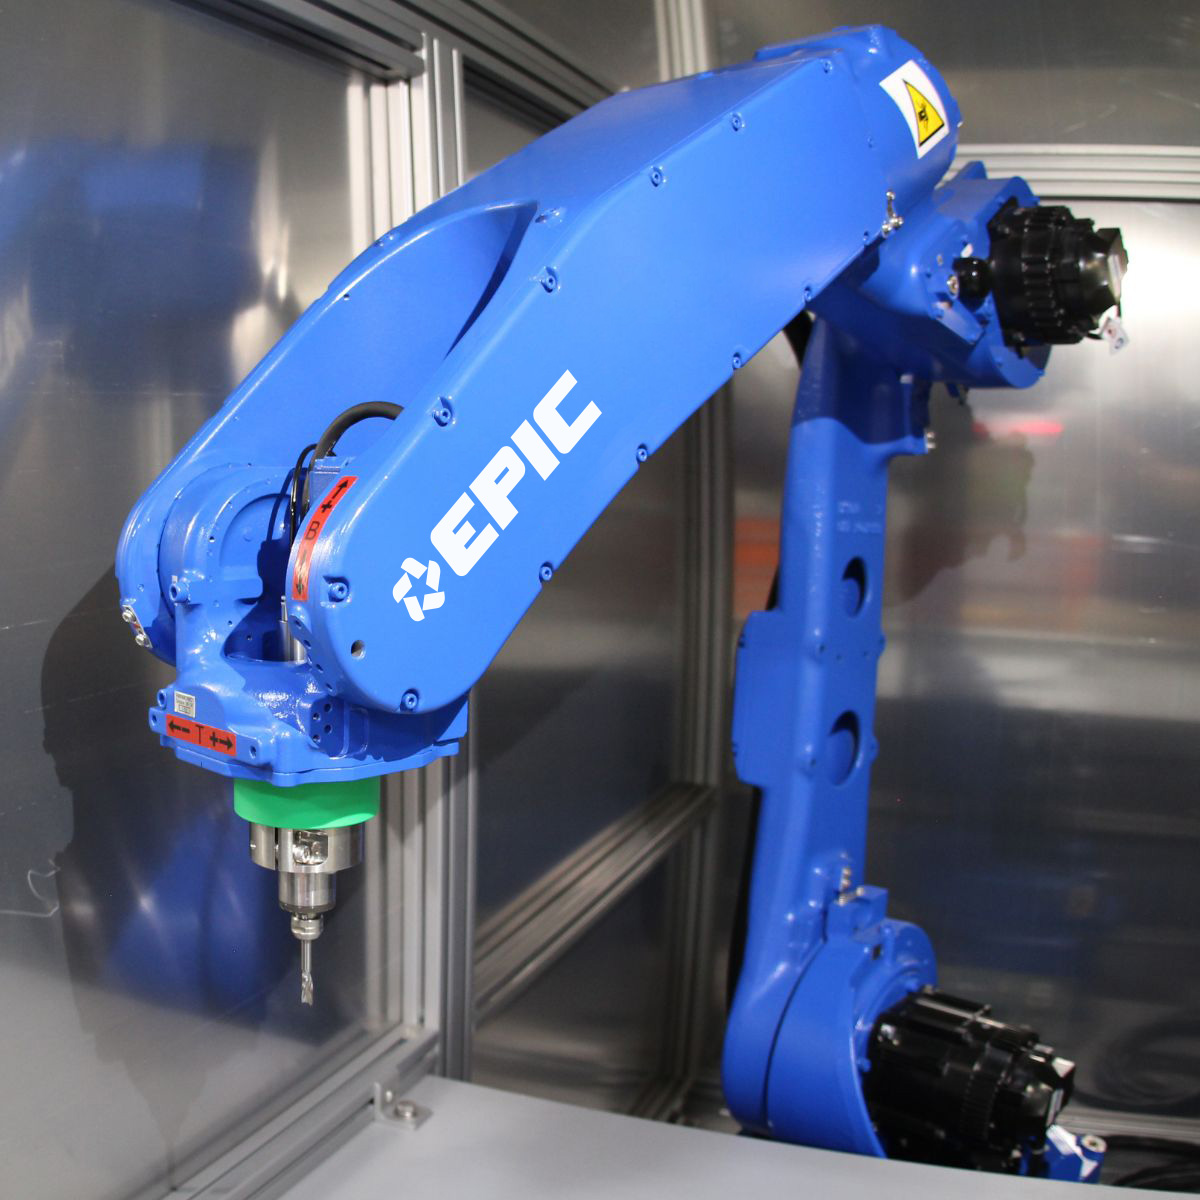 EPIC Robotics Solution Utilizing Yaskawa